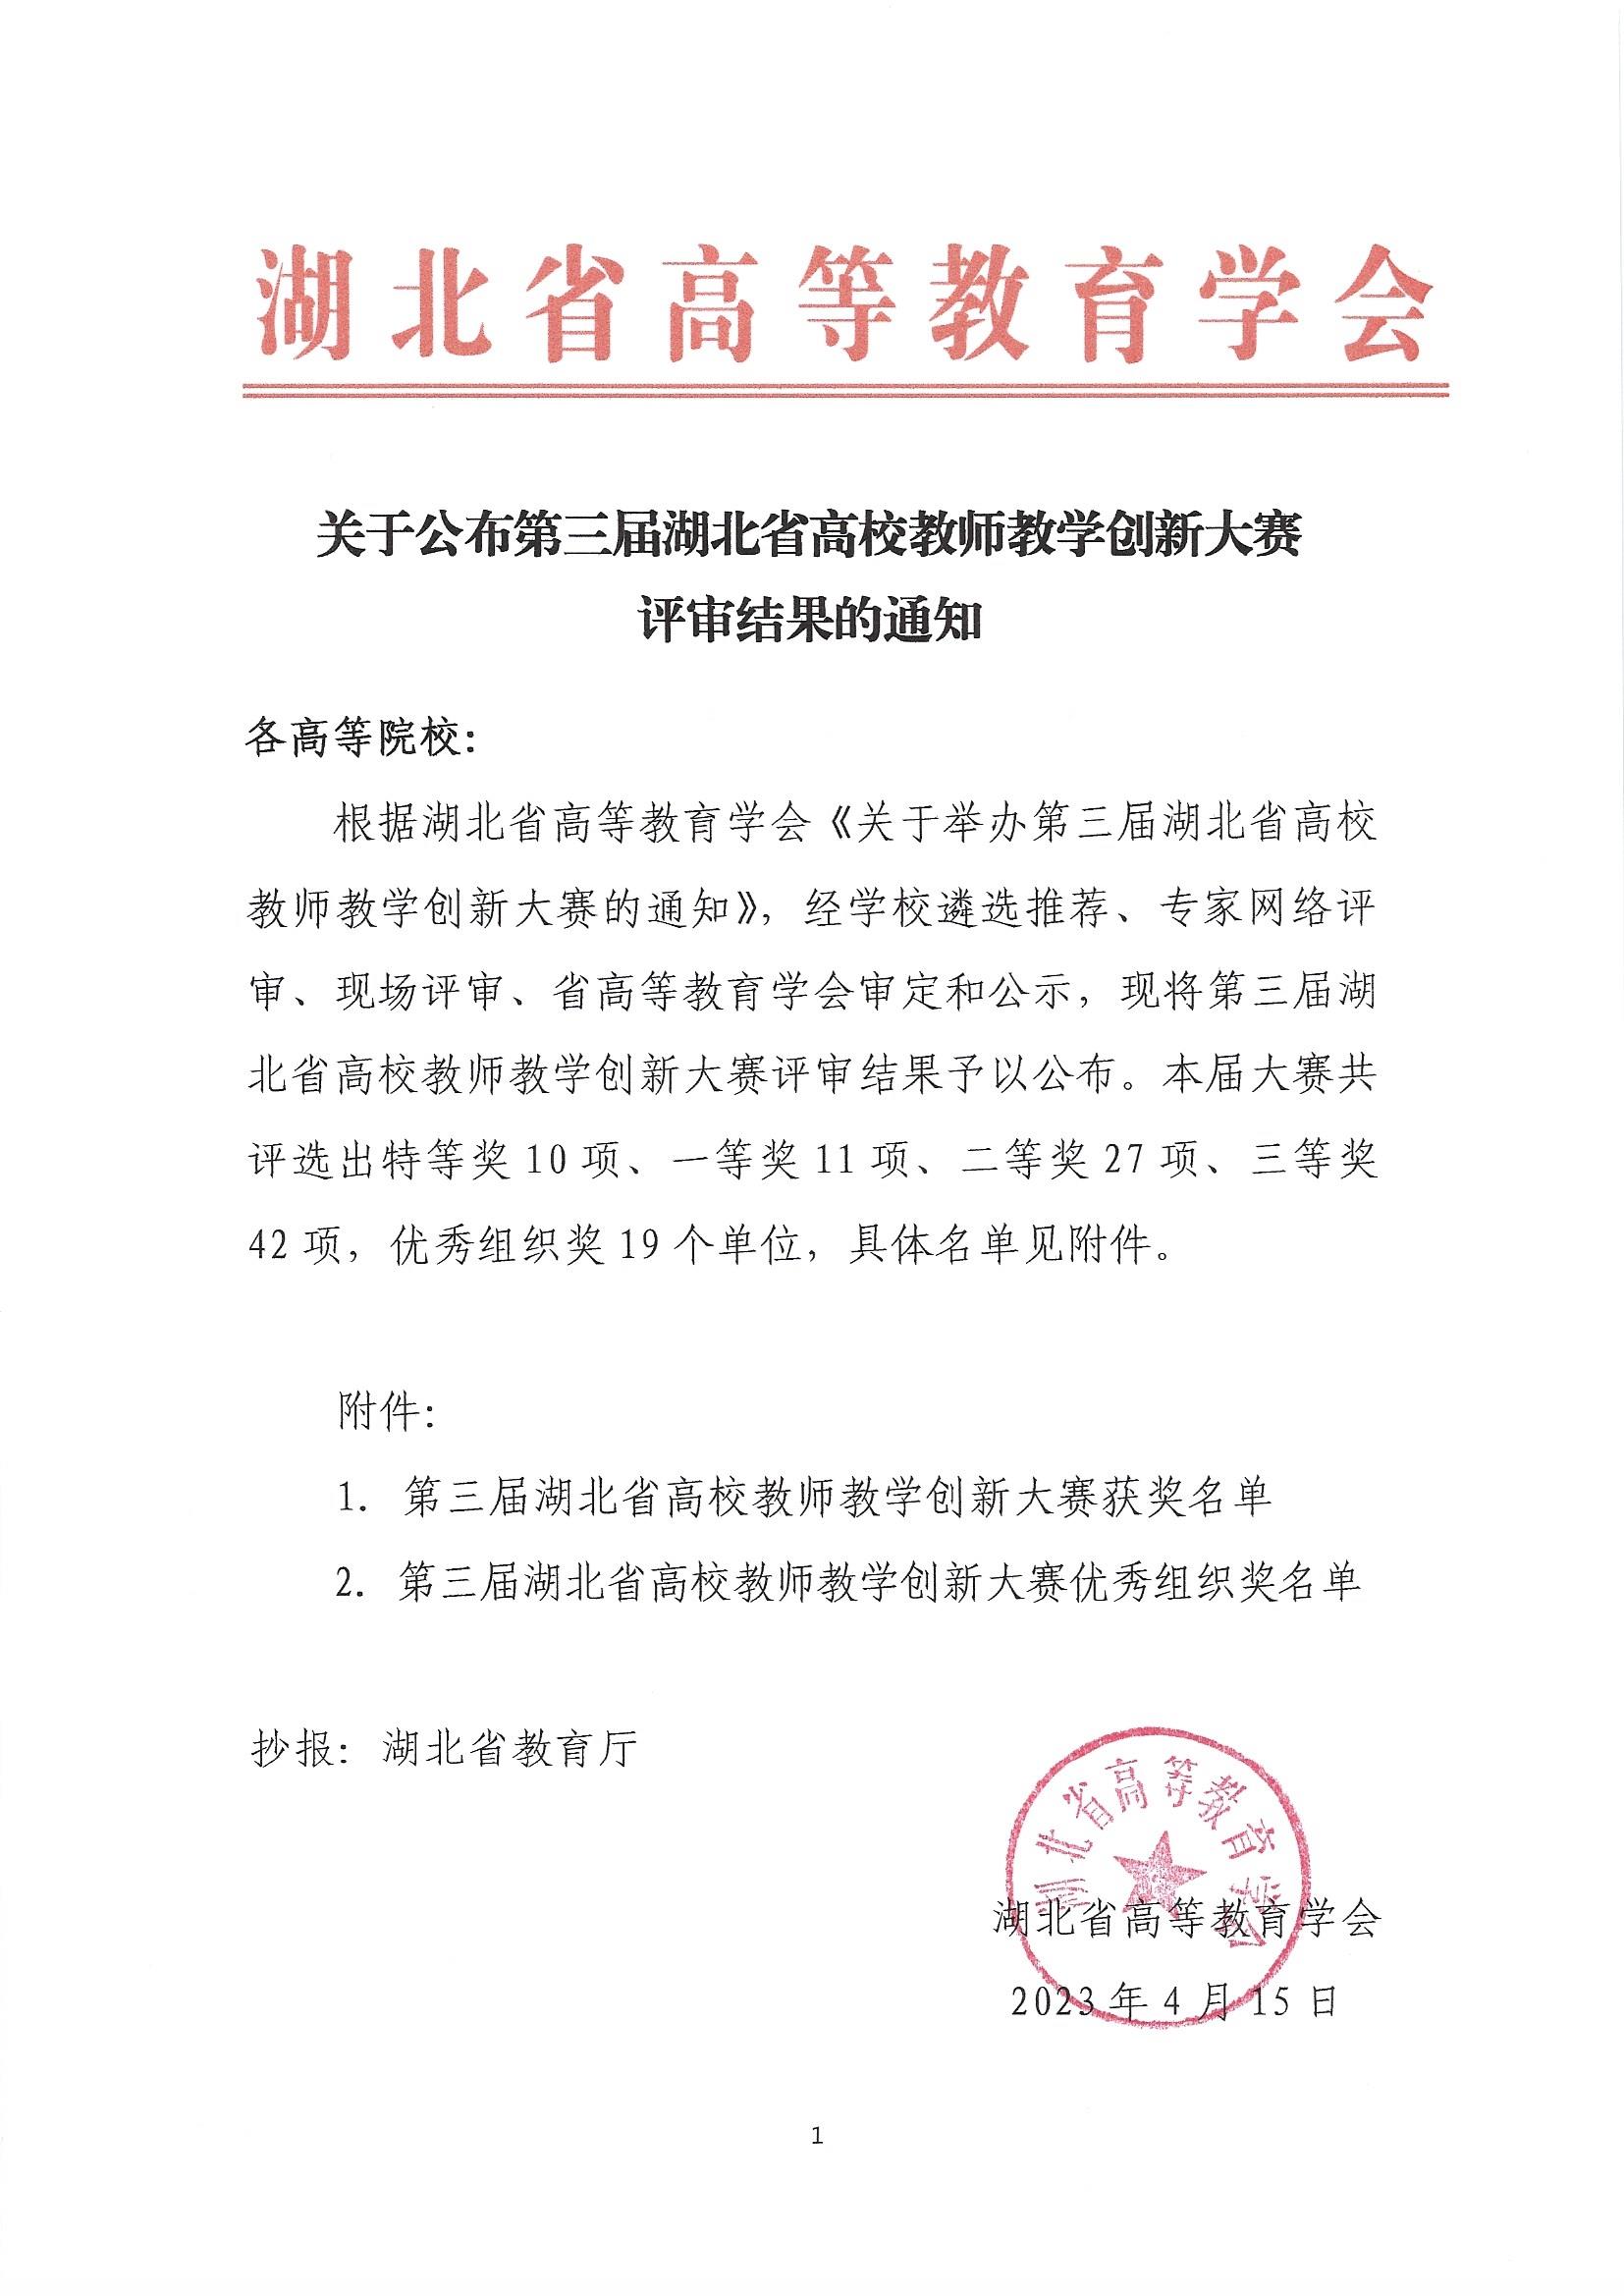 (盖章发布版）关于公布第三届湖北省高校教师教学创新大赛评审结果的通知_页面_1.jpg